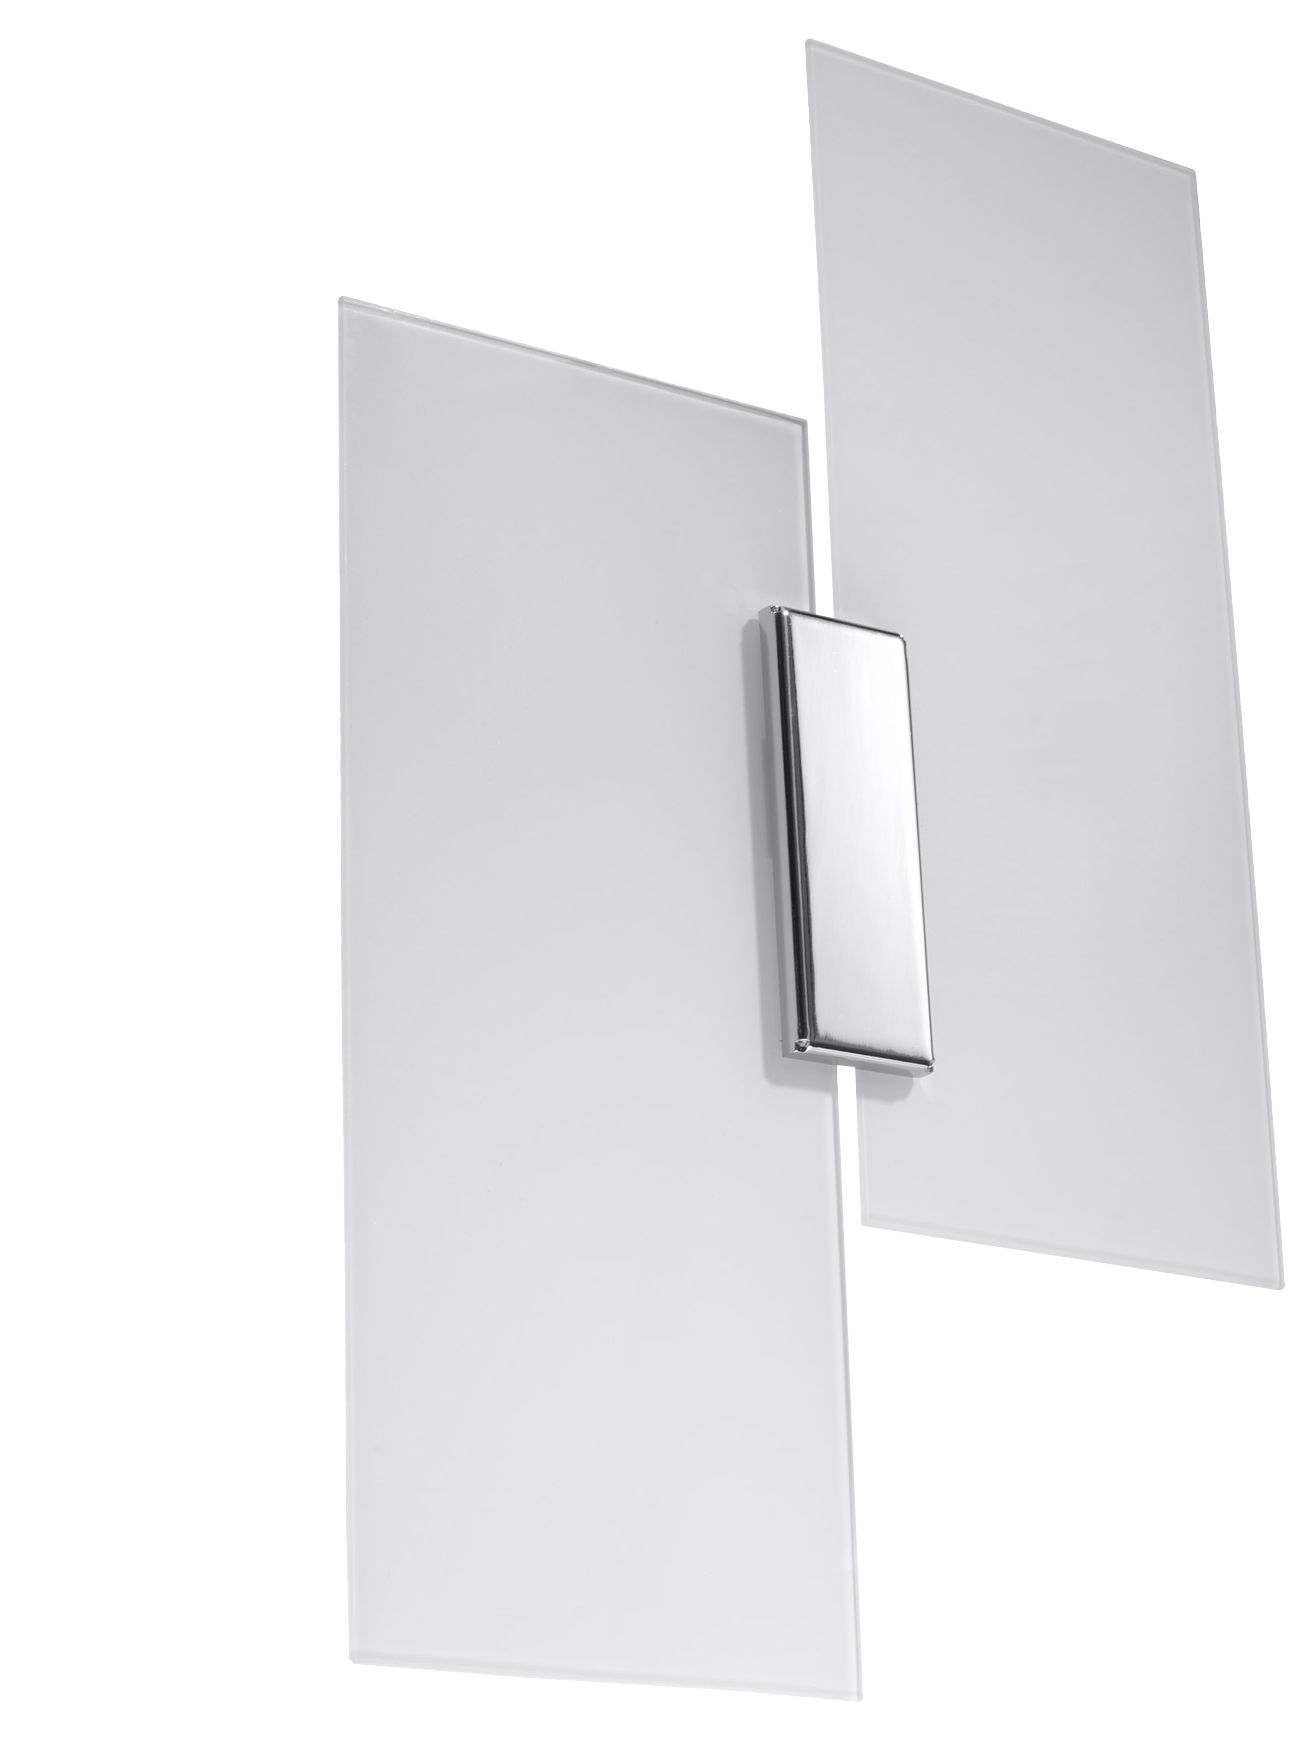 Glas - inkl. und Glas | Stahl LichtED.de und Wandleuchte 2x7,5W warmweiß LED Beleuchtung Design LED diffuses Lampen